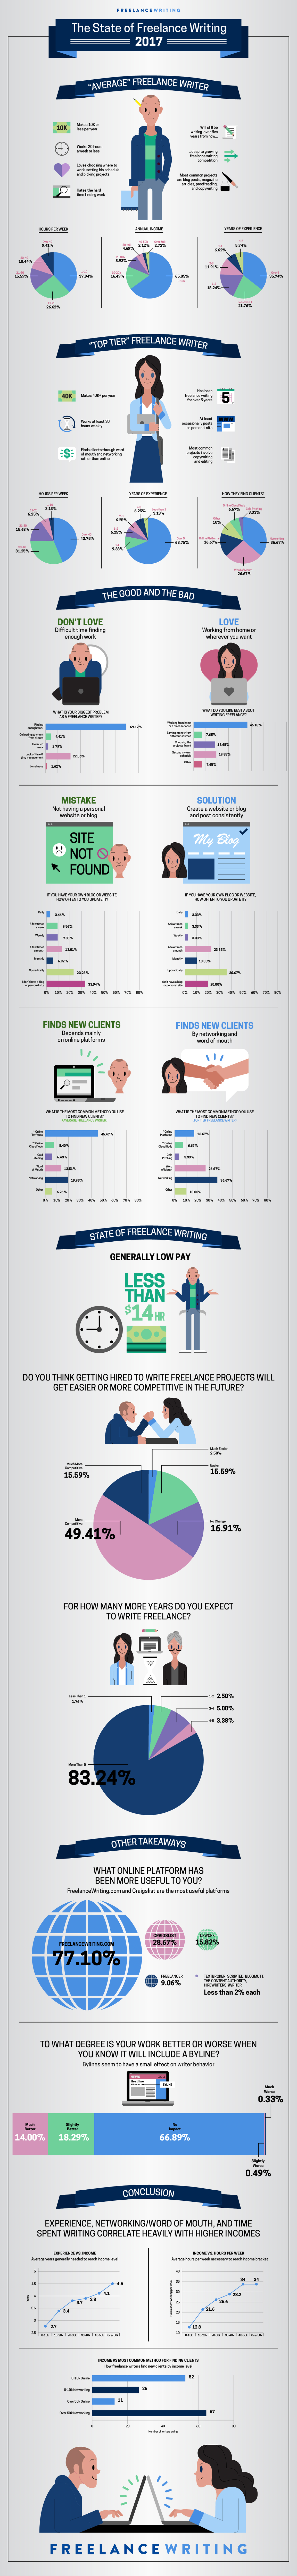 freelance writing survey infographic